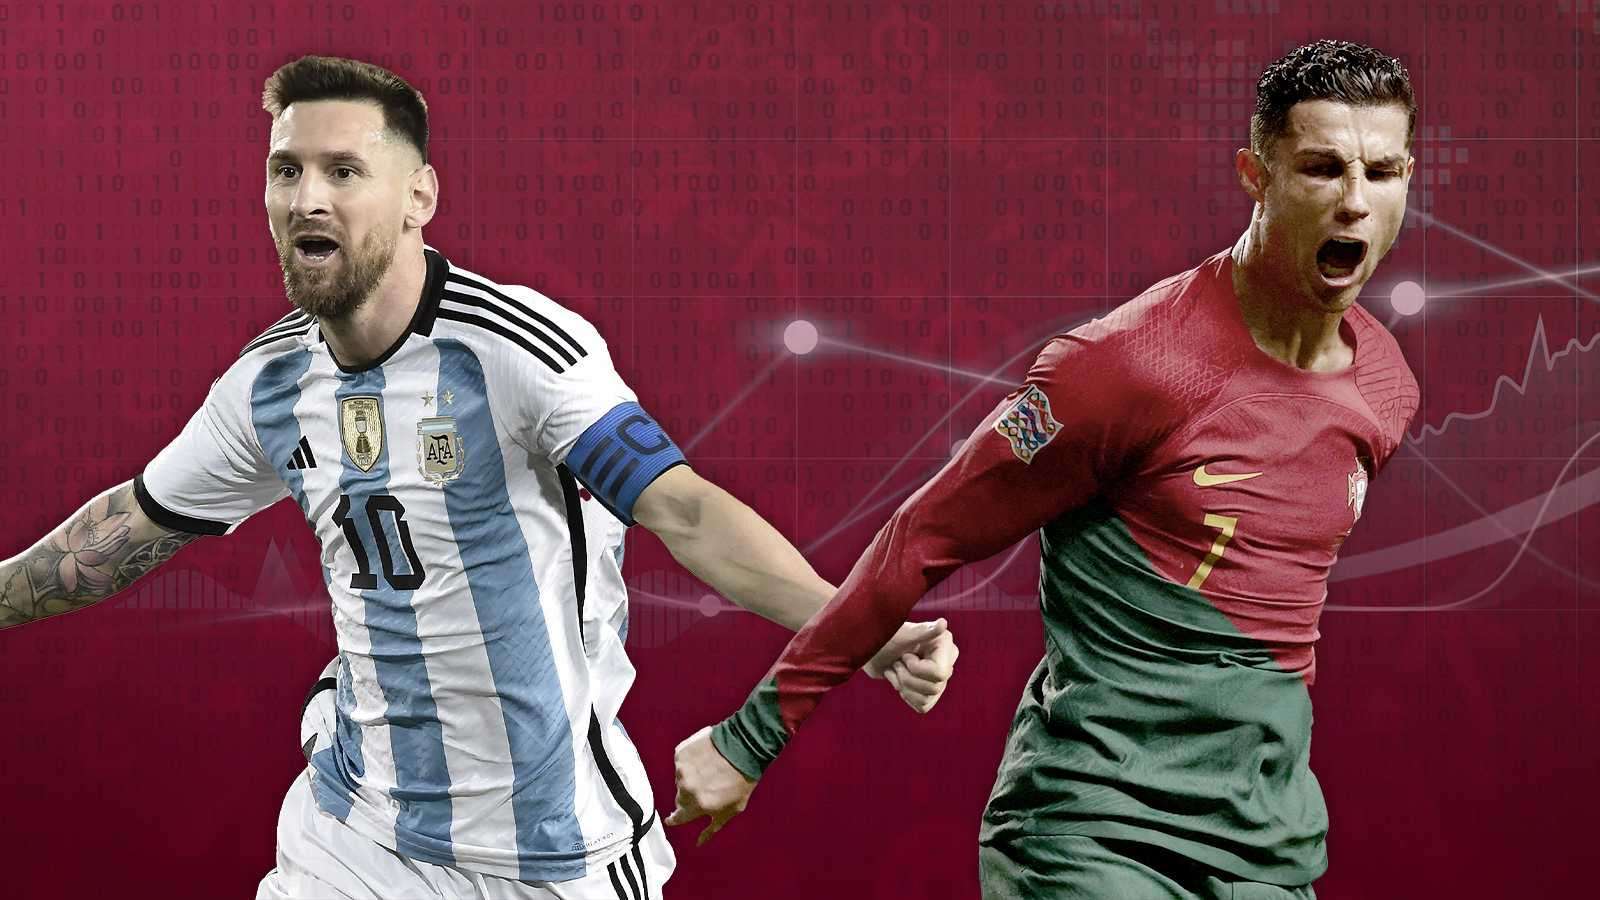 Ronaldo și Messi sunt doi jucători excelenți puzzle online din fotografie